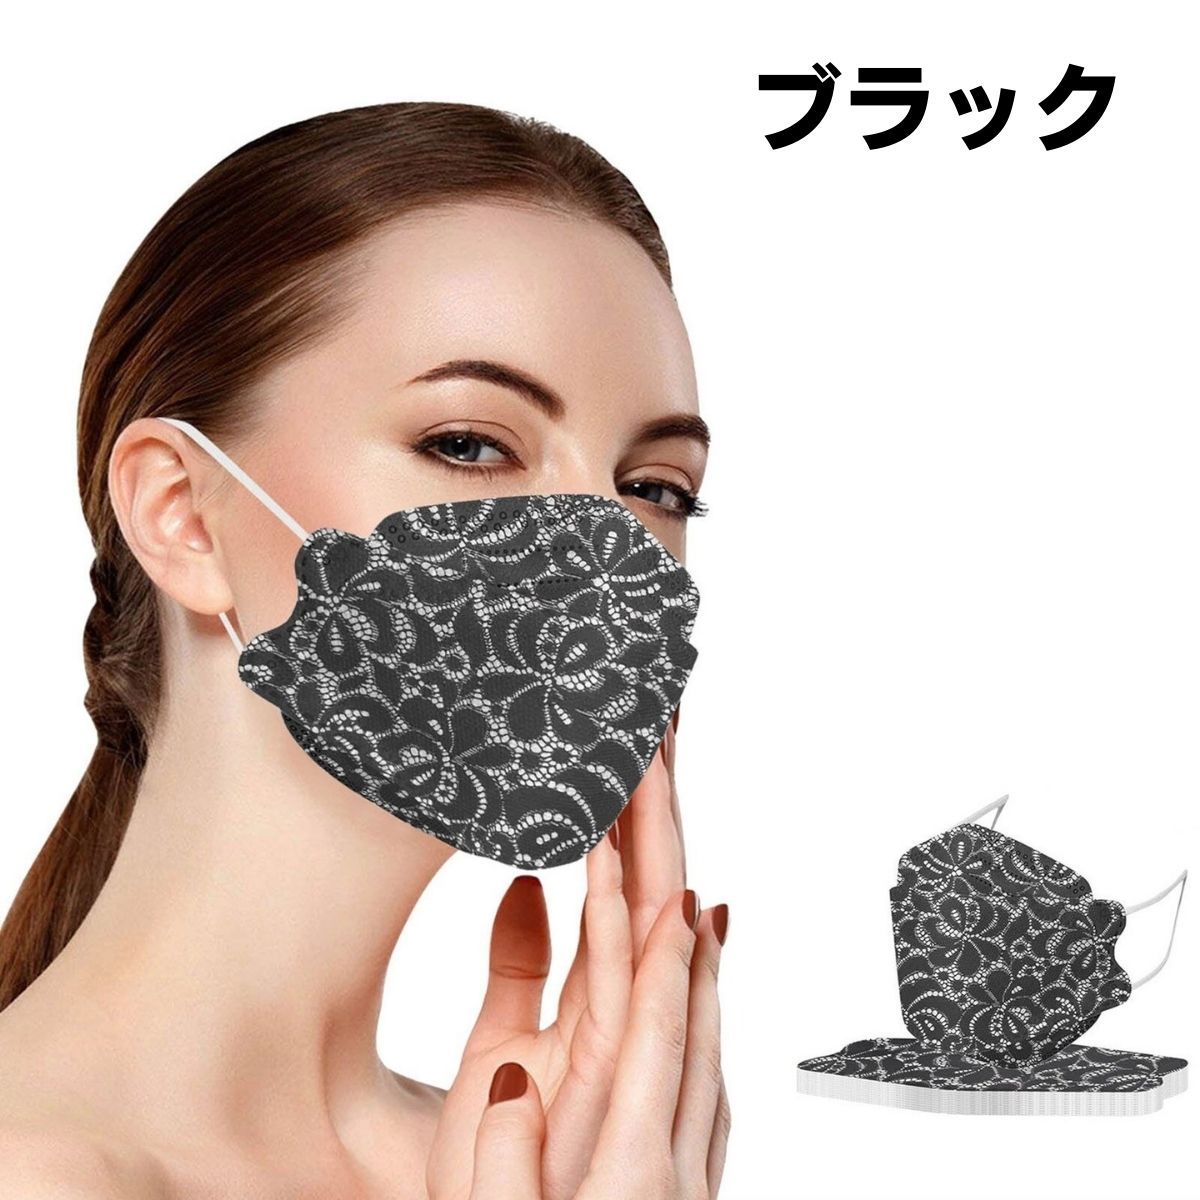 マスク KF94 不織布 レースマスク 10枚入り 花柄 柳葉型 4層構造 3D 使い捨て 韓国マス...